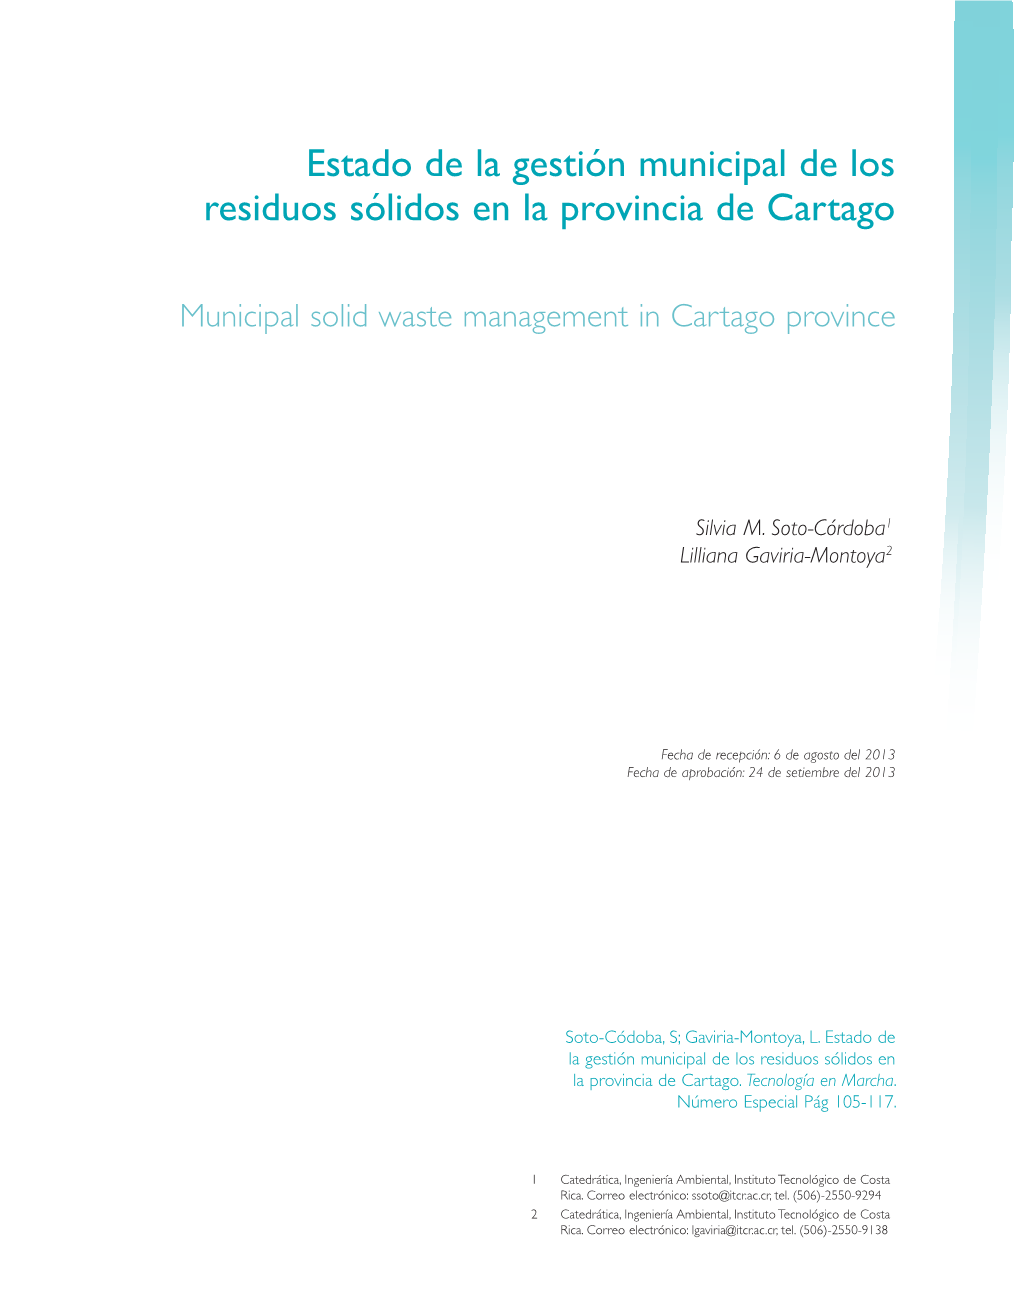 Estado De La Gestión Municipal De Los Residuos Sólidos En La Provincia De Cartago